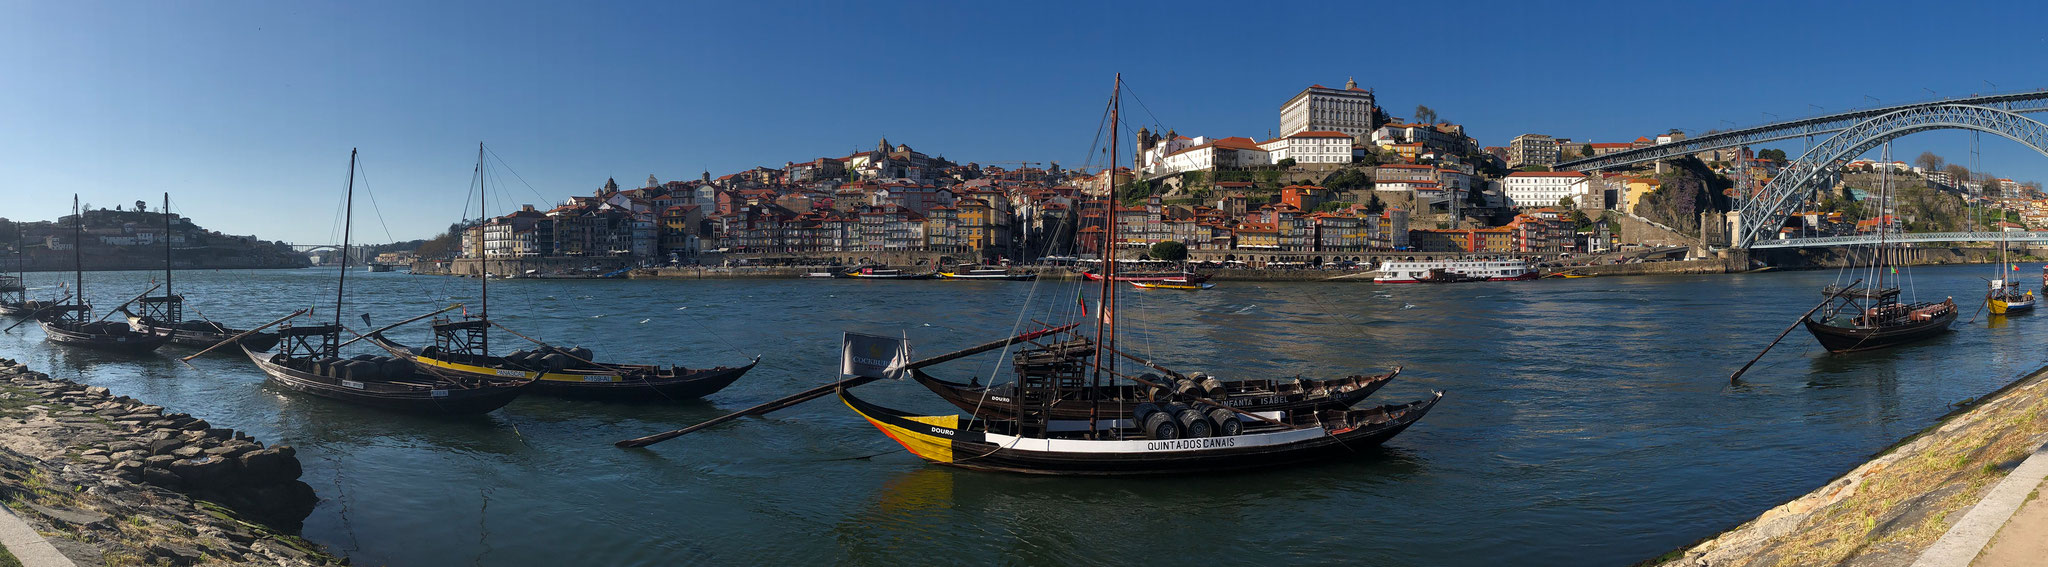 Porto, Portugal (March 2019)